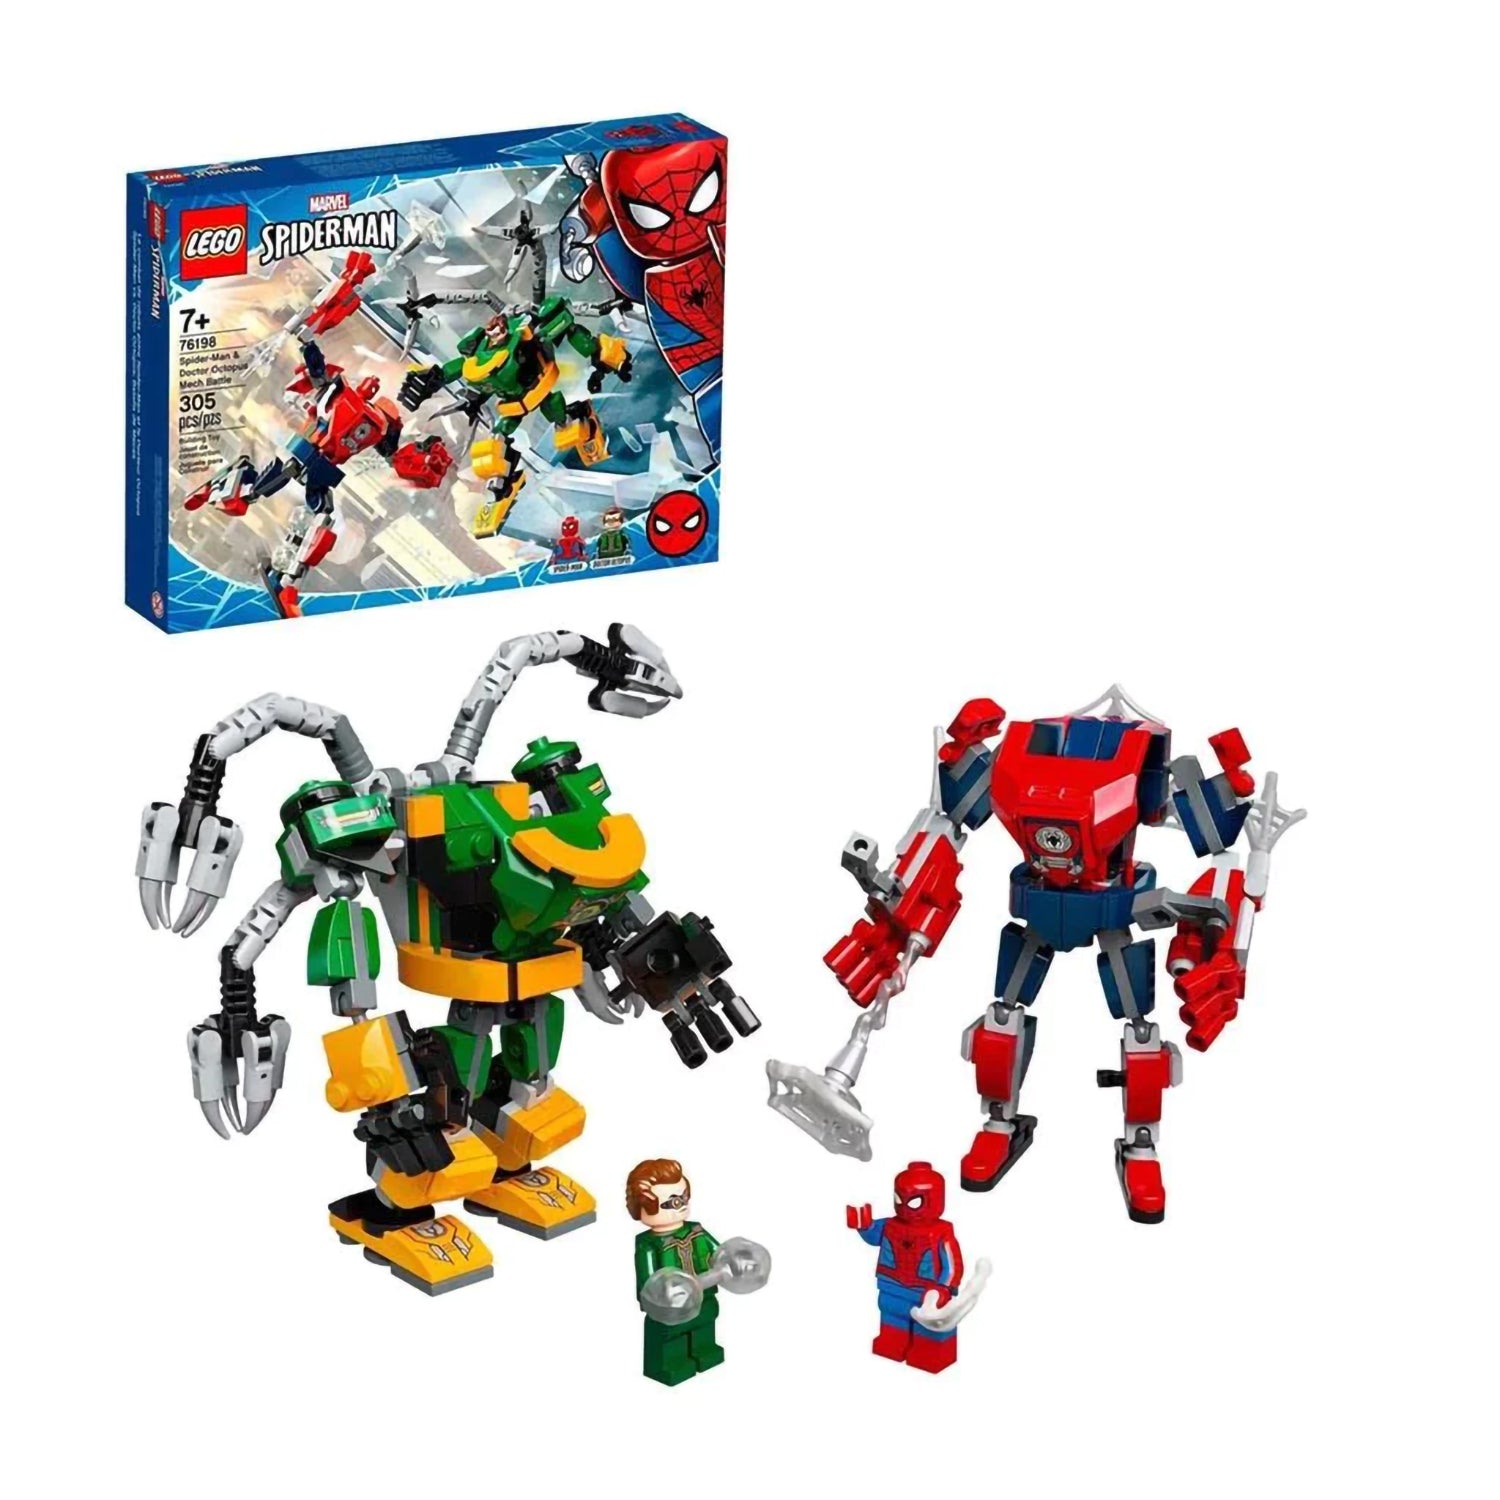 LEGO Marvel Spider-Man: Spider-Man & Doctor Octopus Mech Battle [76198 - 305 Pieces]